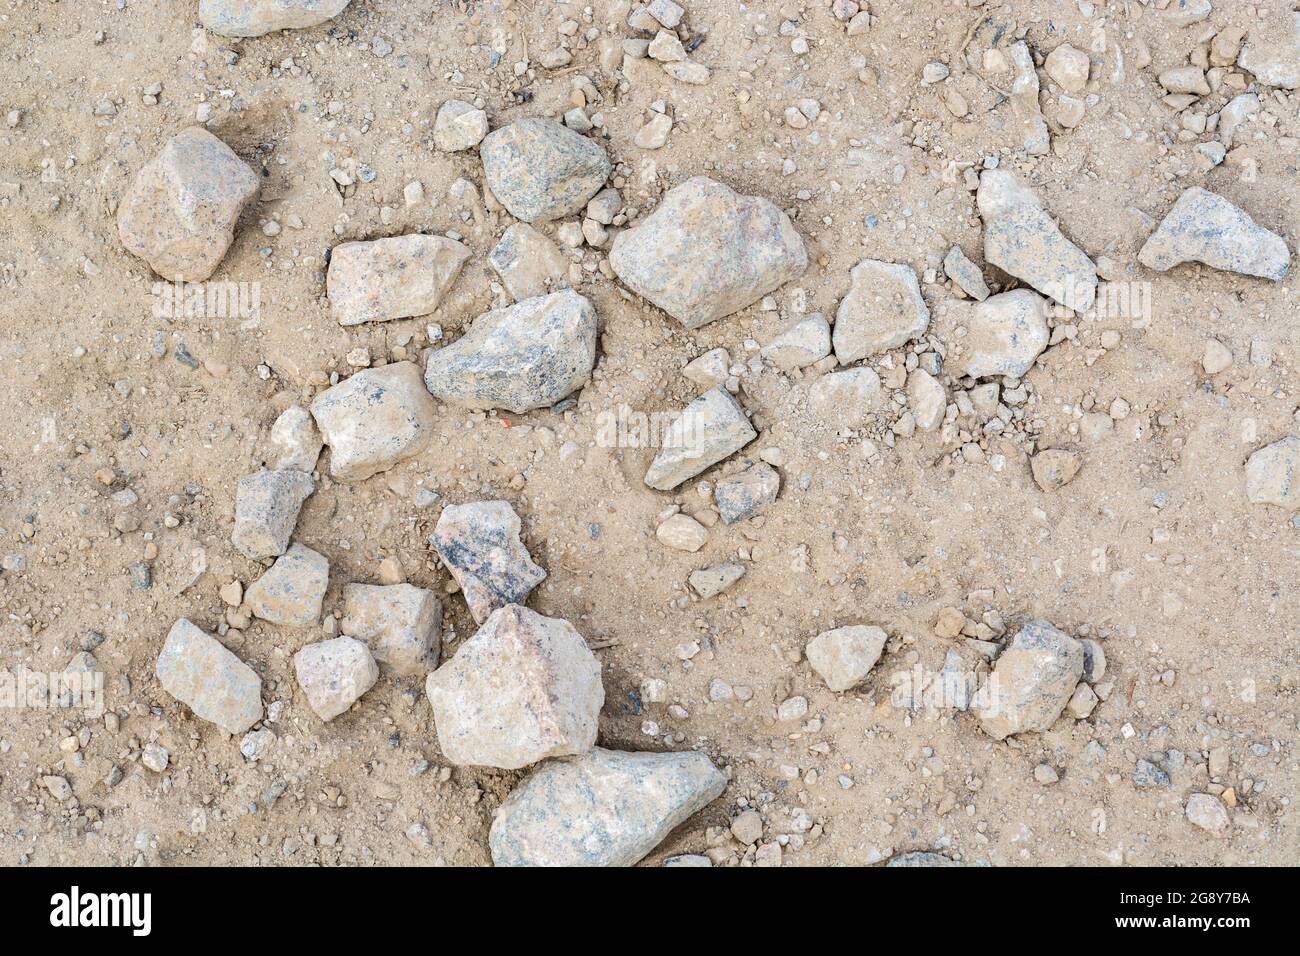 Pezzi a caso di pietra dura grossolana stese su un cantiere per lavori pesanti. Pezzi più grandi di circa 2-3 pollici di larghezza. Per una strada accidentata Foto Stock